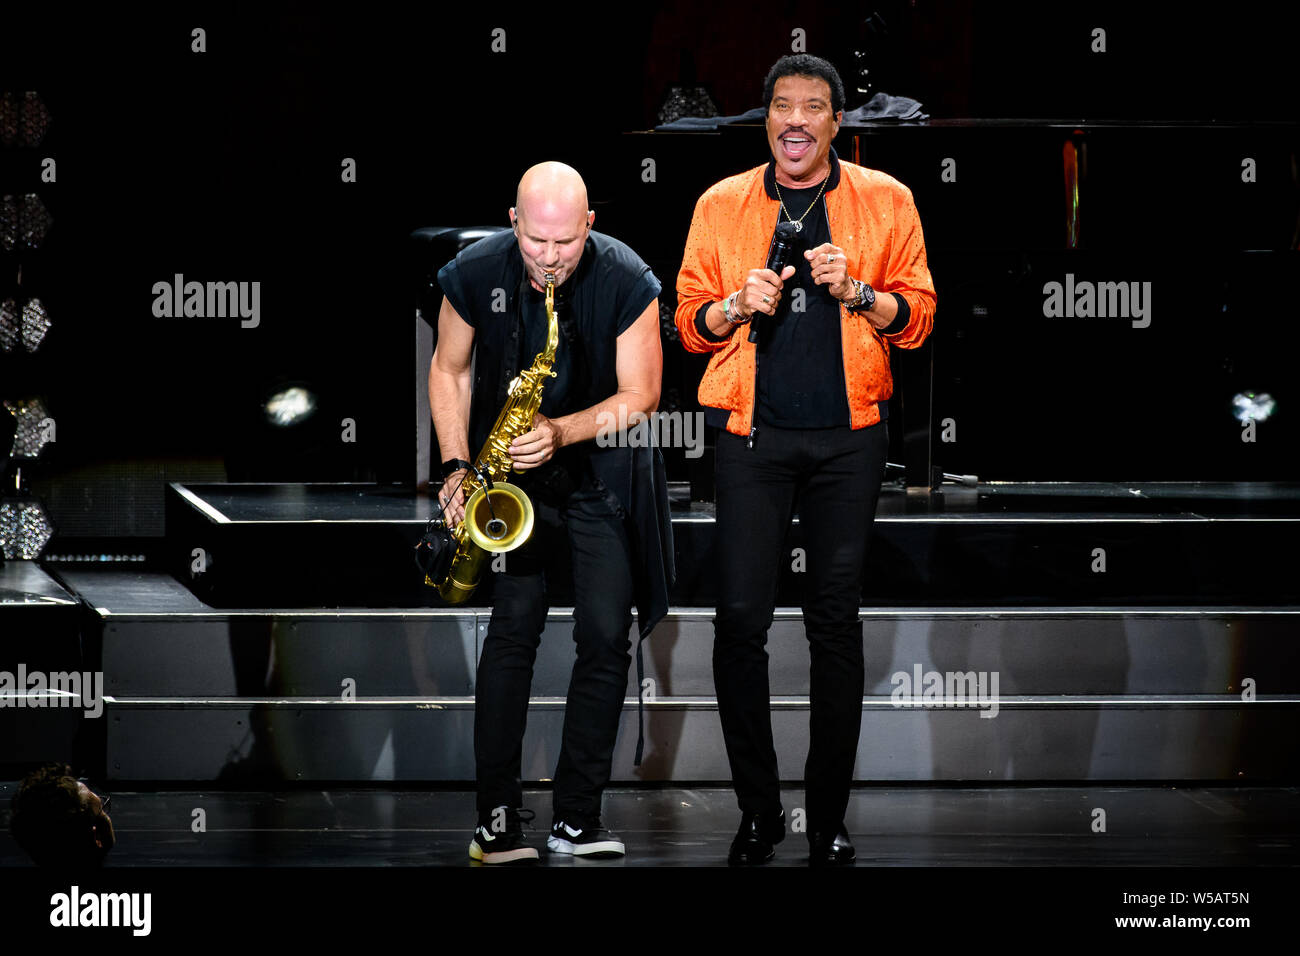 Un chanteur, auteur-compositeur, acteur et producteur de Lionel Richie avec Dino Soldo saxophoniste effectué un show de Toronto. Banque D'Images